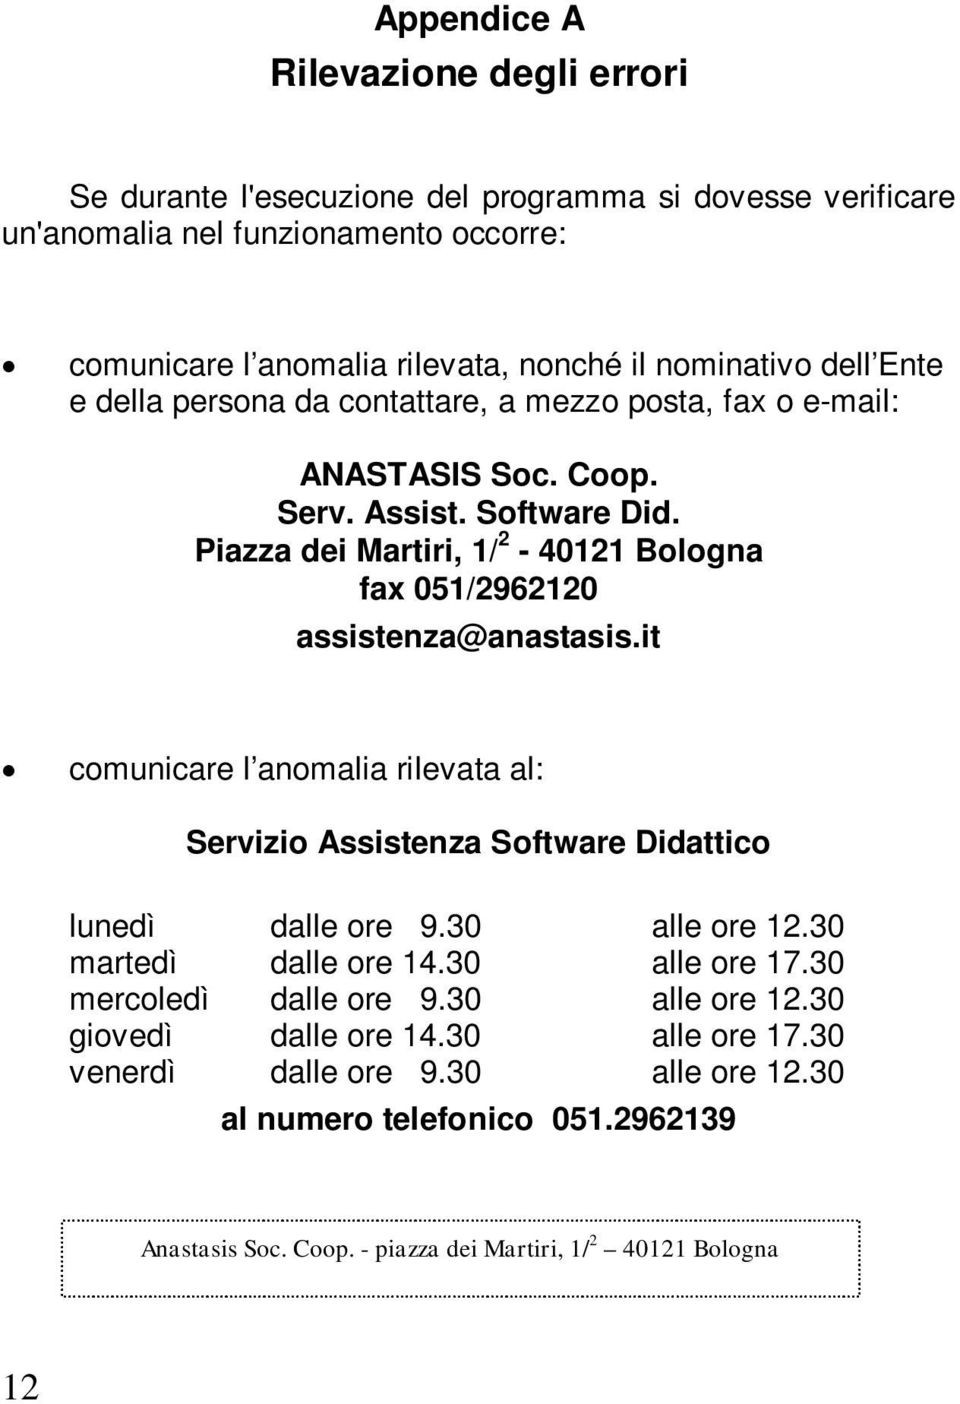 Piazza dei Martiri, 1/ 2-40121 Bologna fax 051/2962120 assistenza@anastasis.it comunicare l anomalia rilevata al: Servizio Assistenza Software Didattico lunedì dalle ore 9.30 alle ore 12.